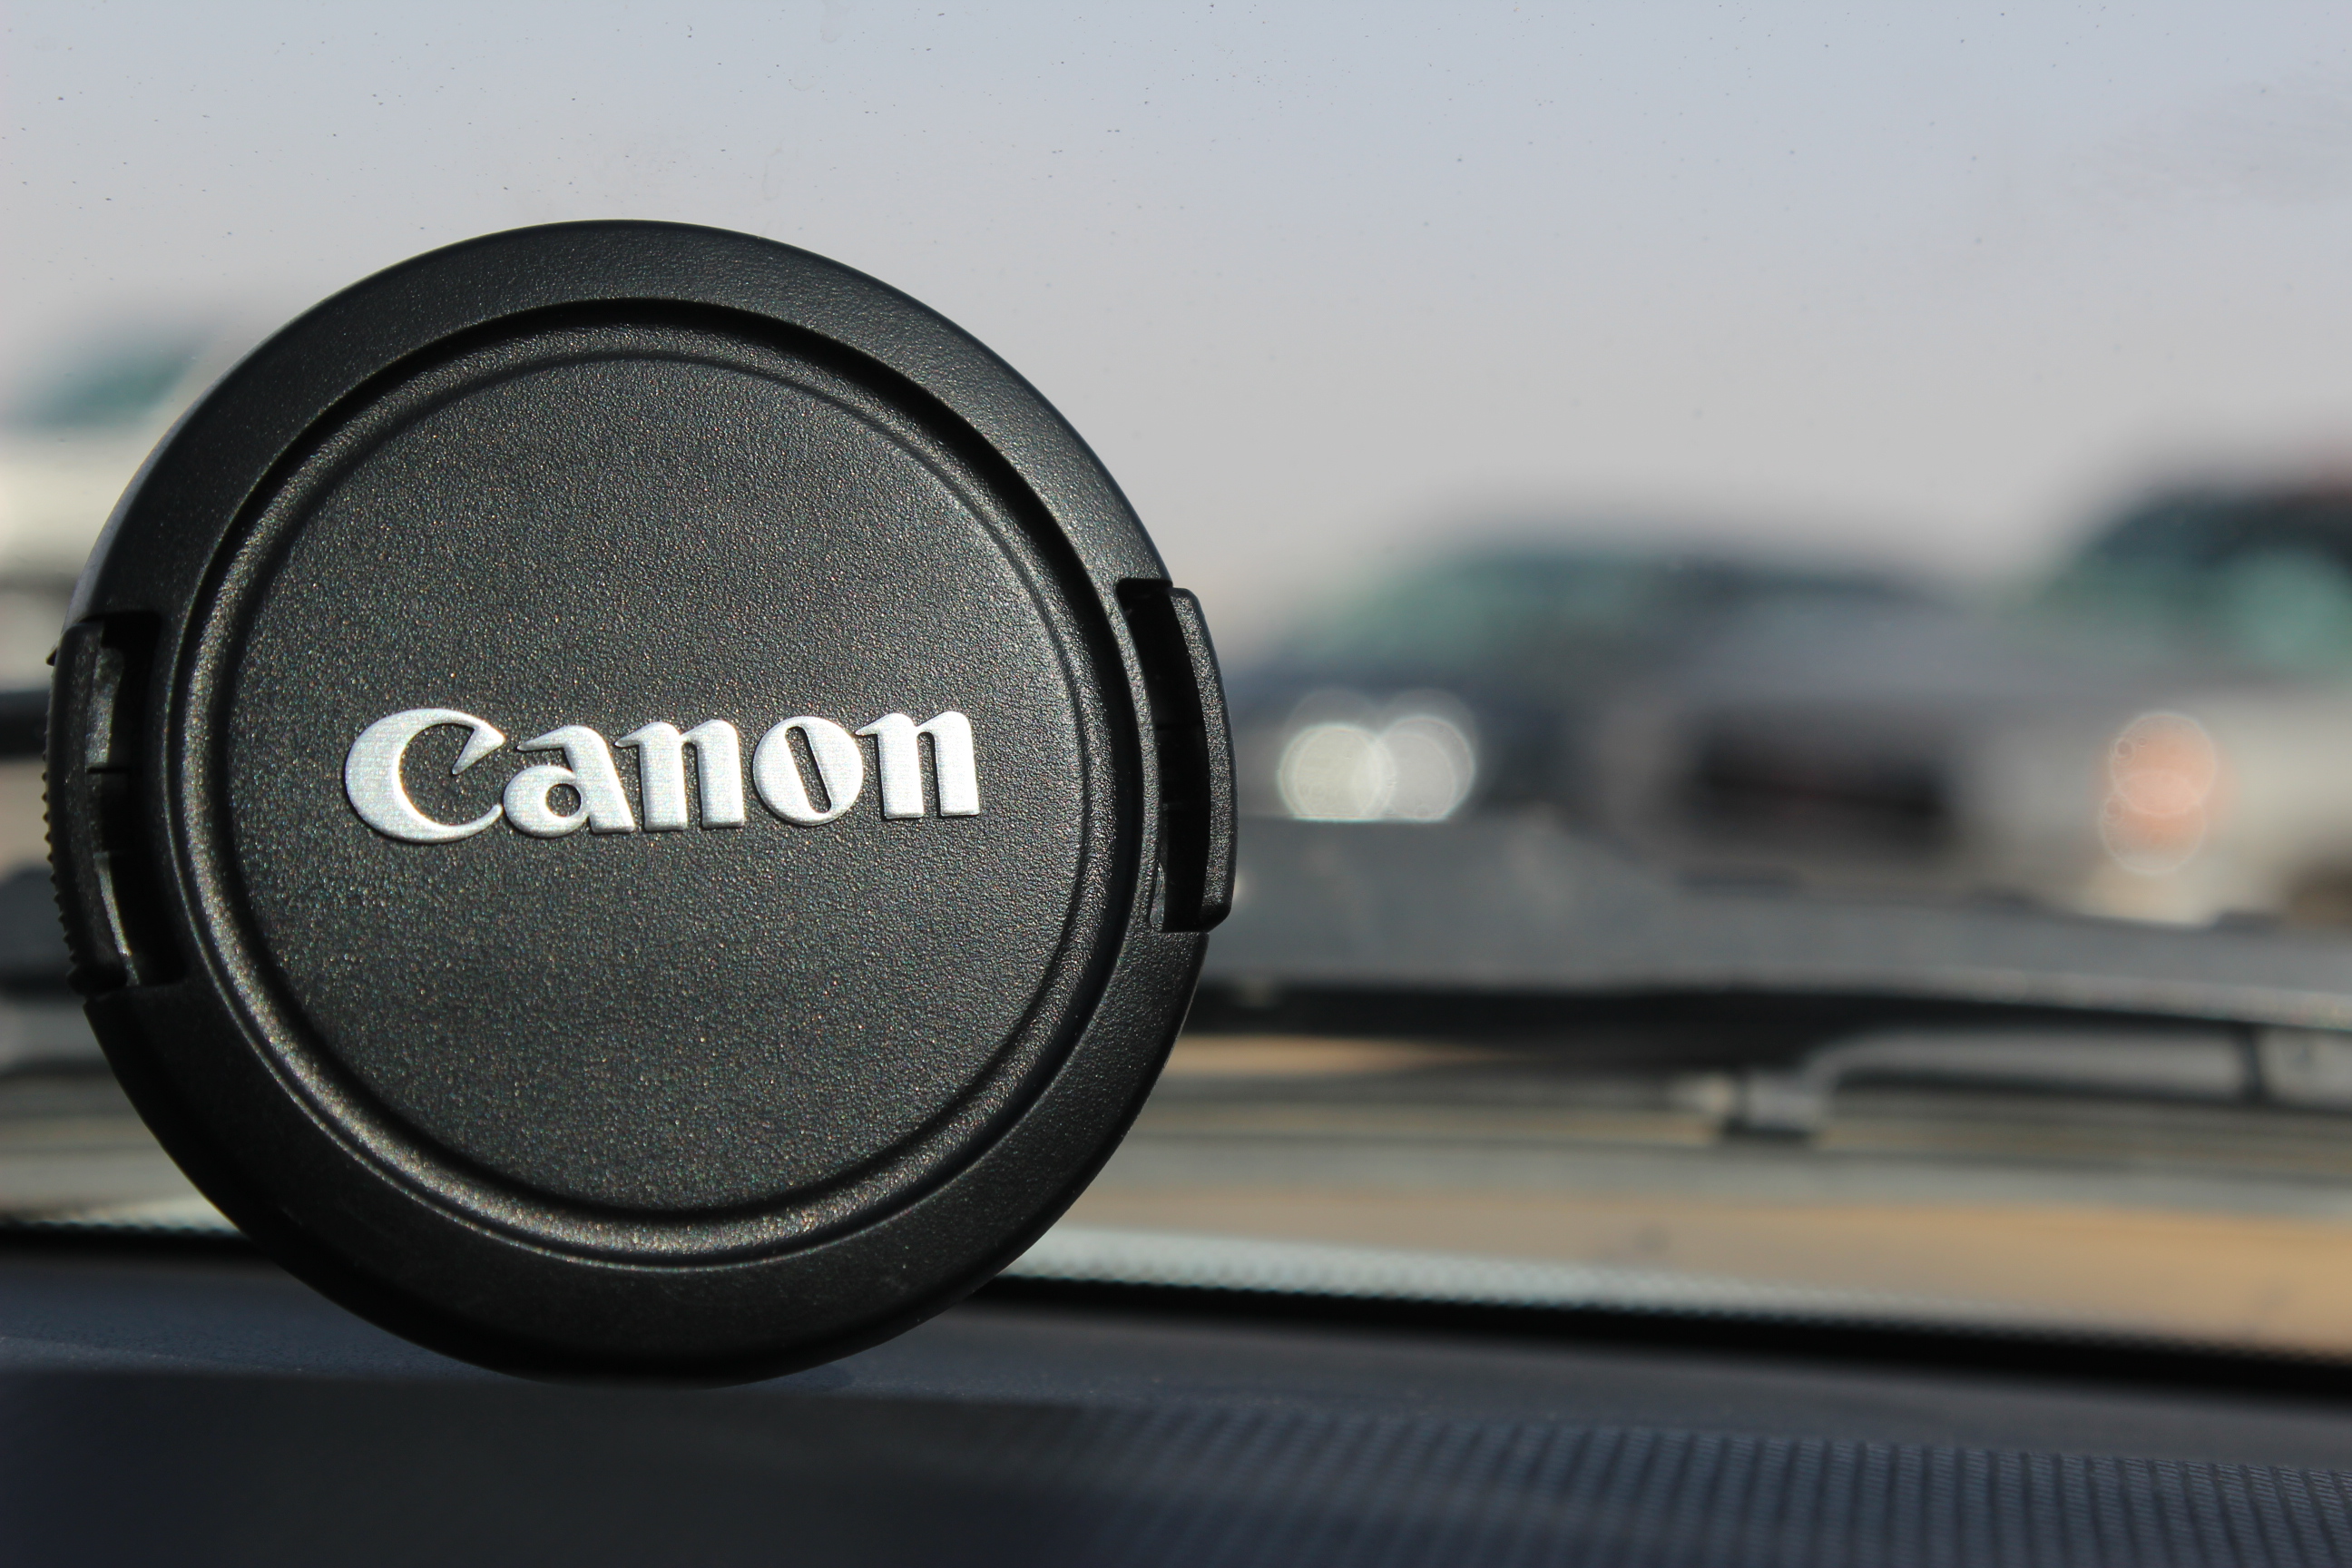 Canon lens cap photo